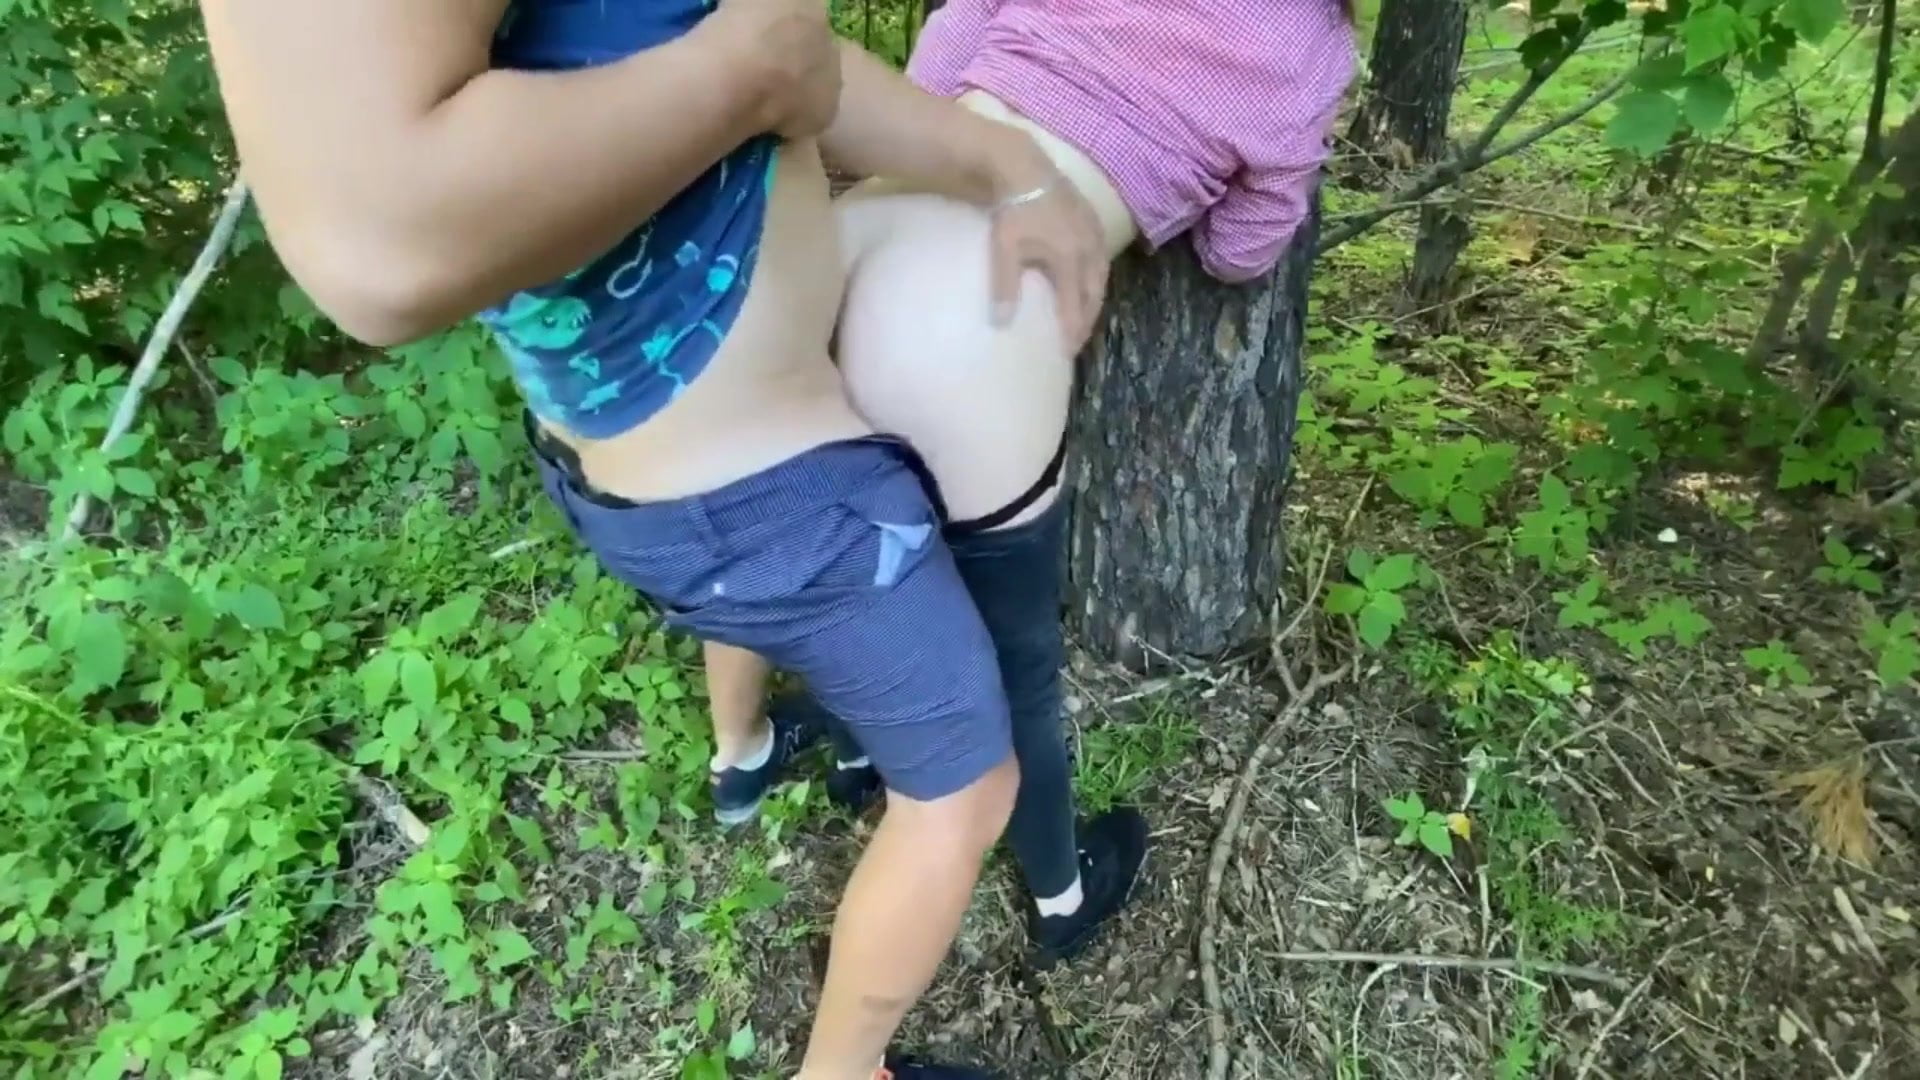 В лесу на покрывале трахает сисястую самку - Порно онлайн